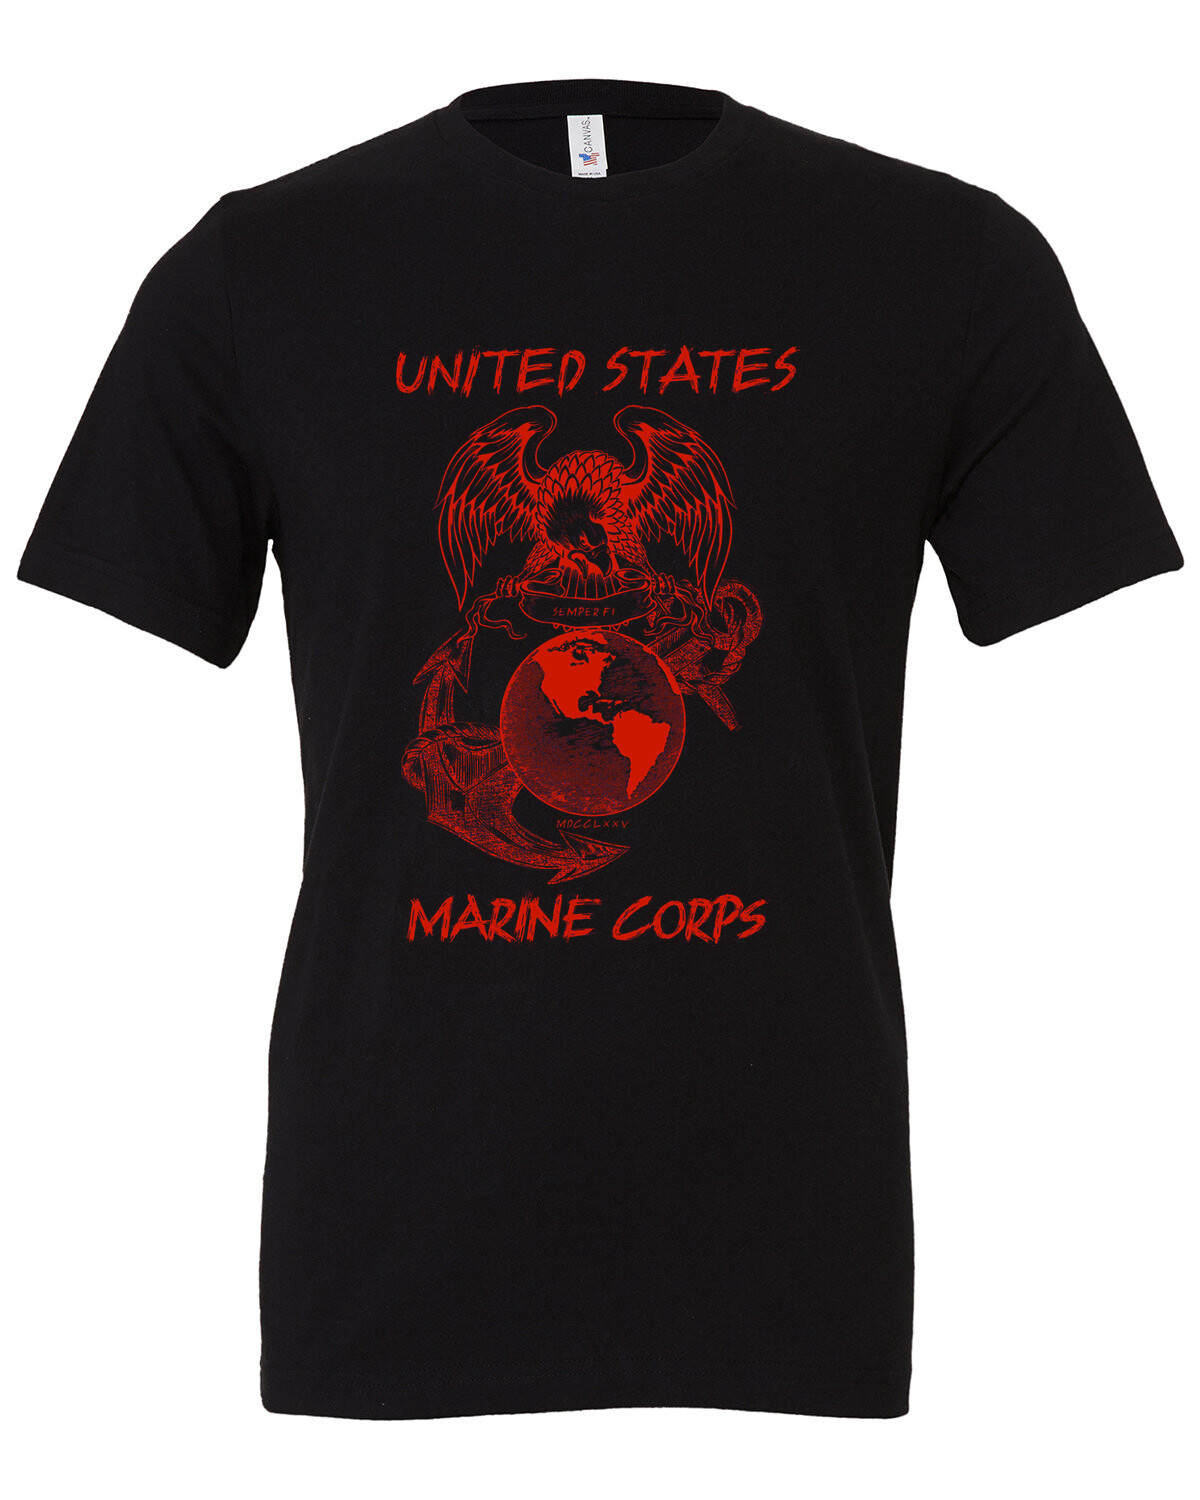 Compra Camiseta US Marines Brass Logo Semper Fidelis Patriotic